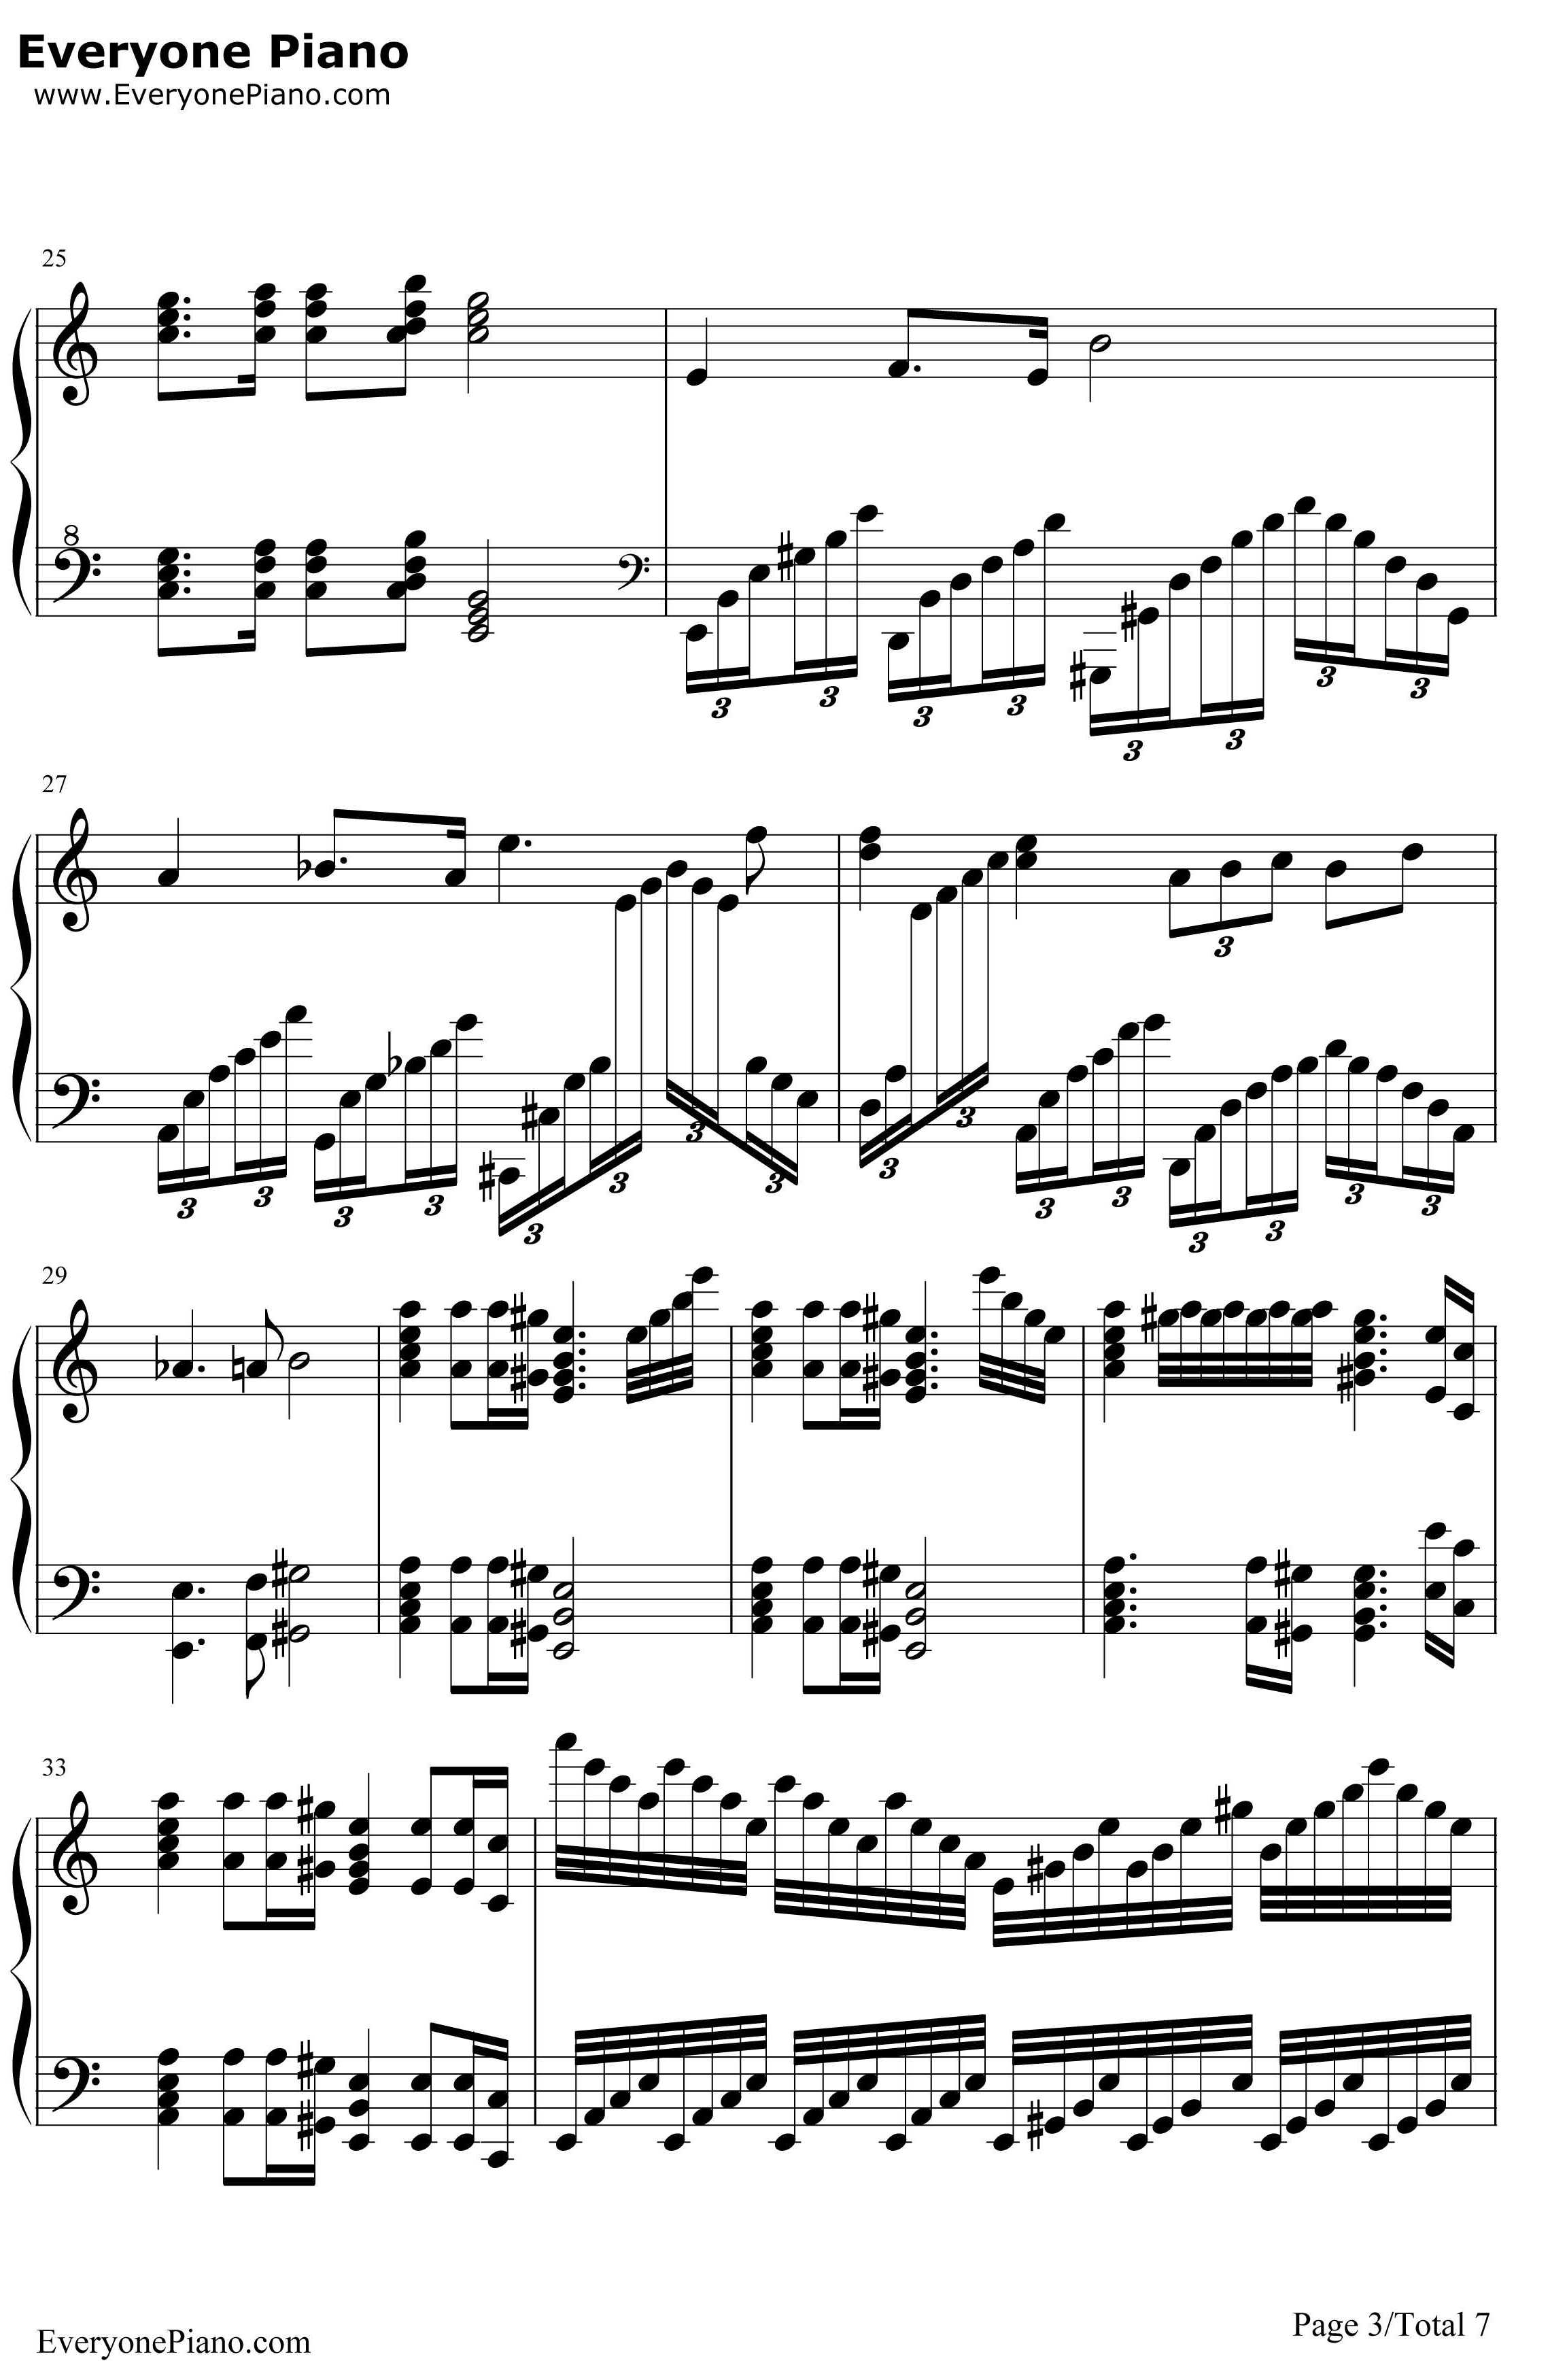 葛里格钢琴变奏曲钢琴谱-爱德华·格里格3